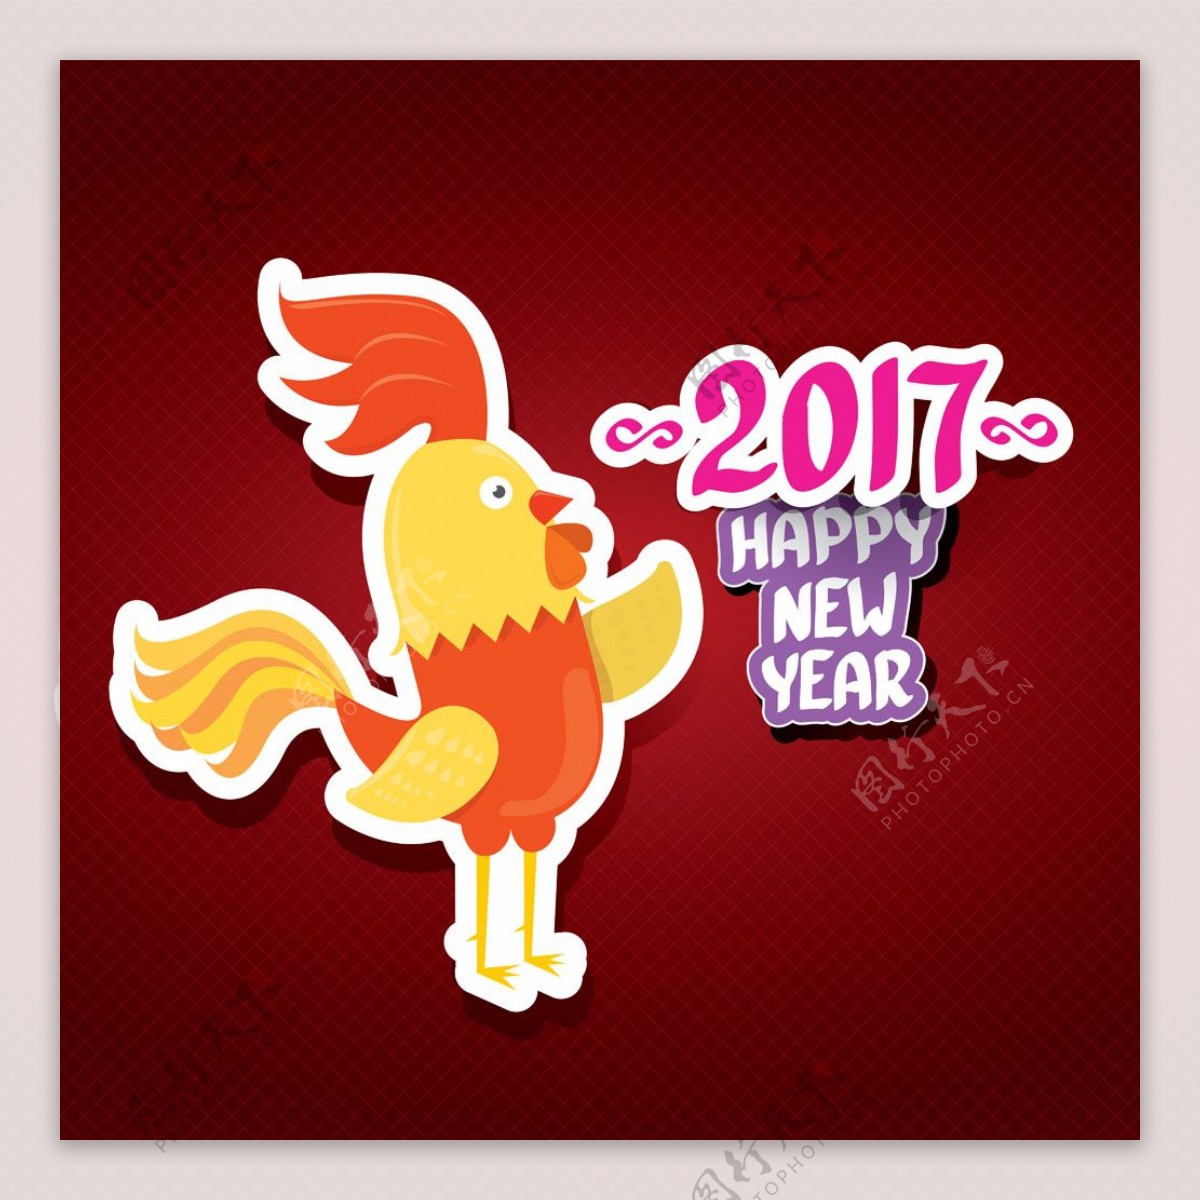 2017年新年快乐与卡通公鸡图片